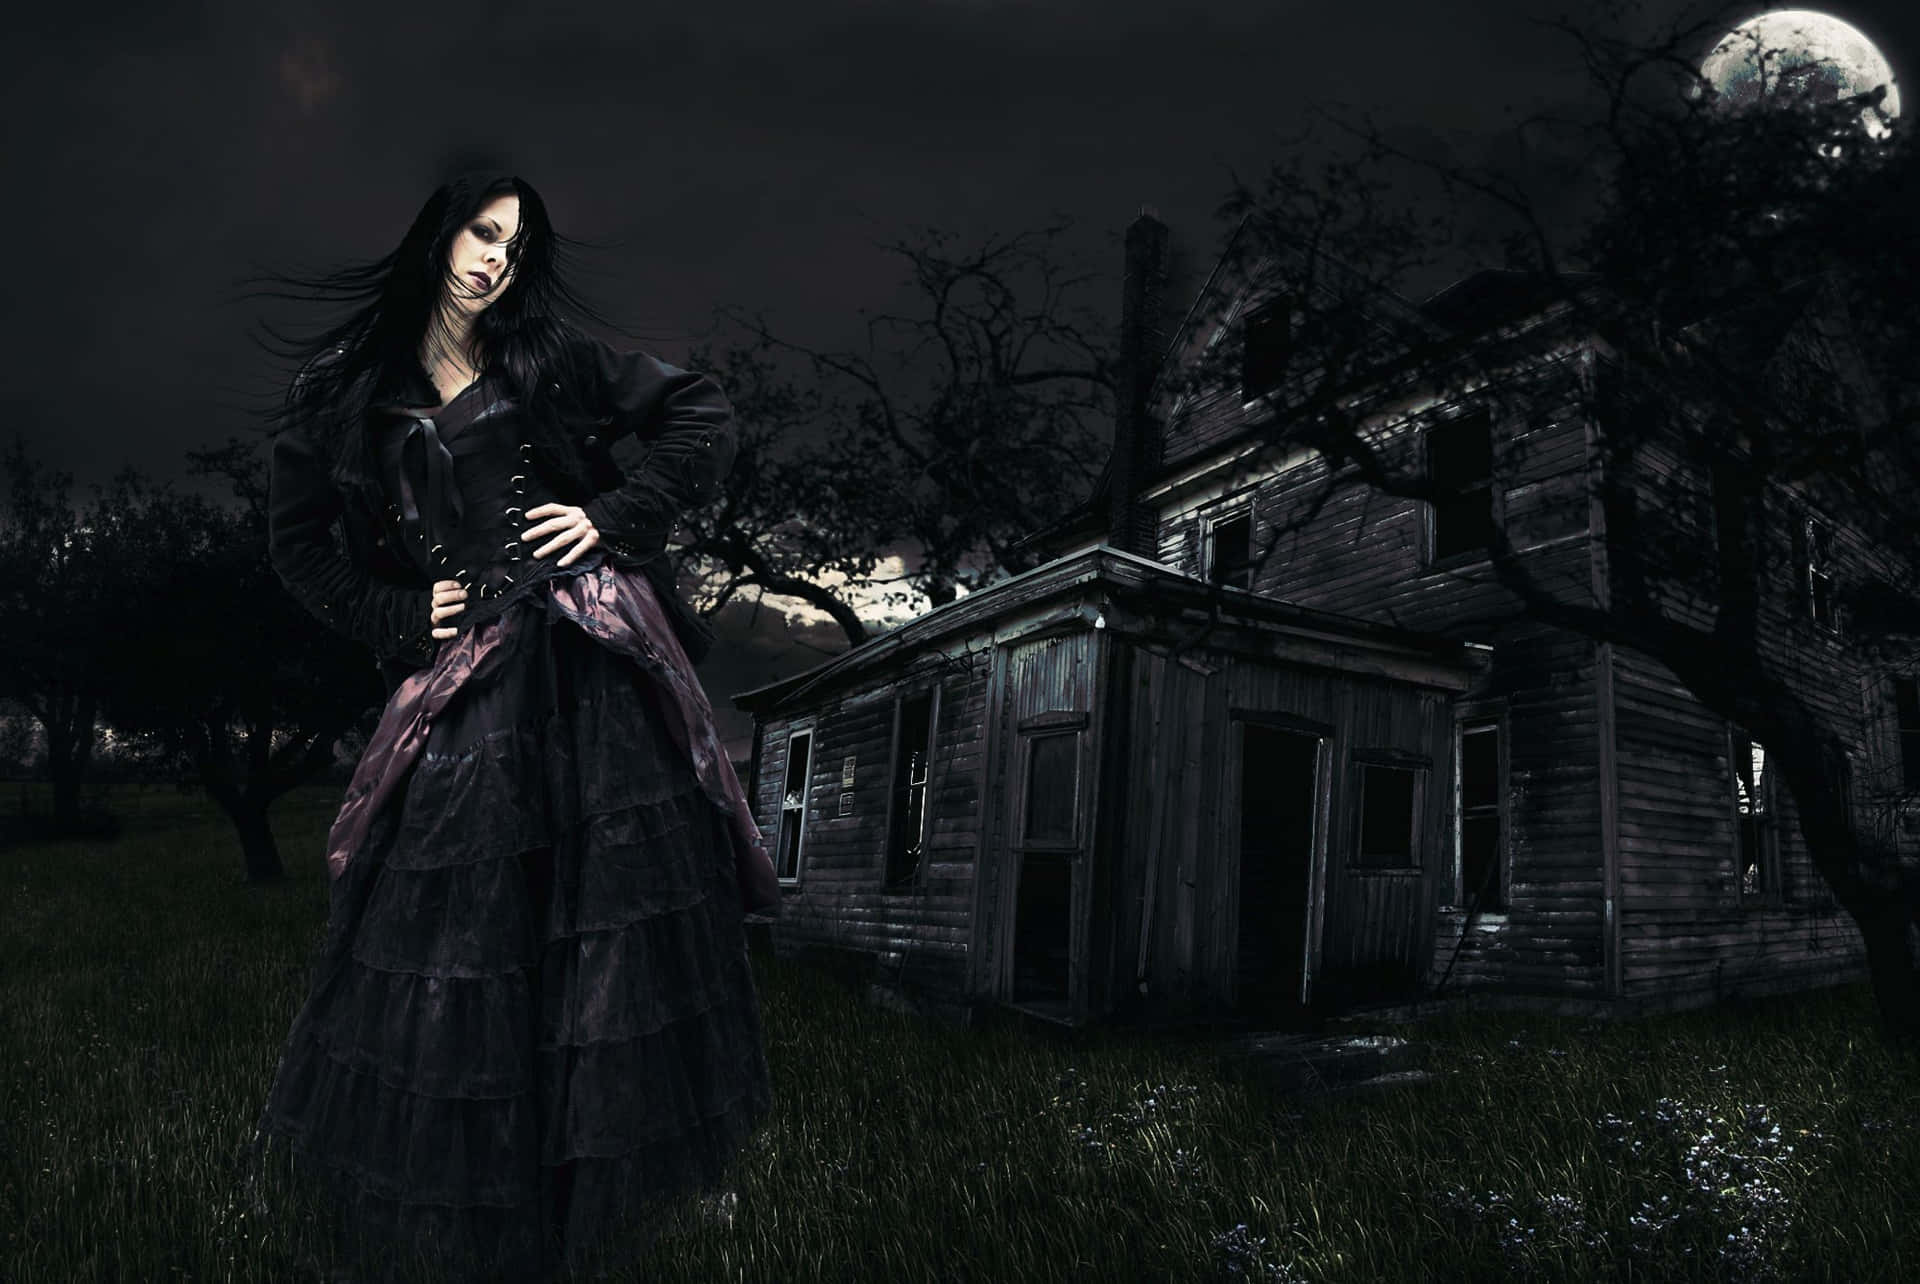 Captivating Gothic Fashion Photography